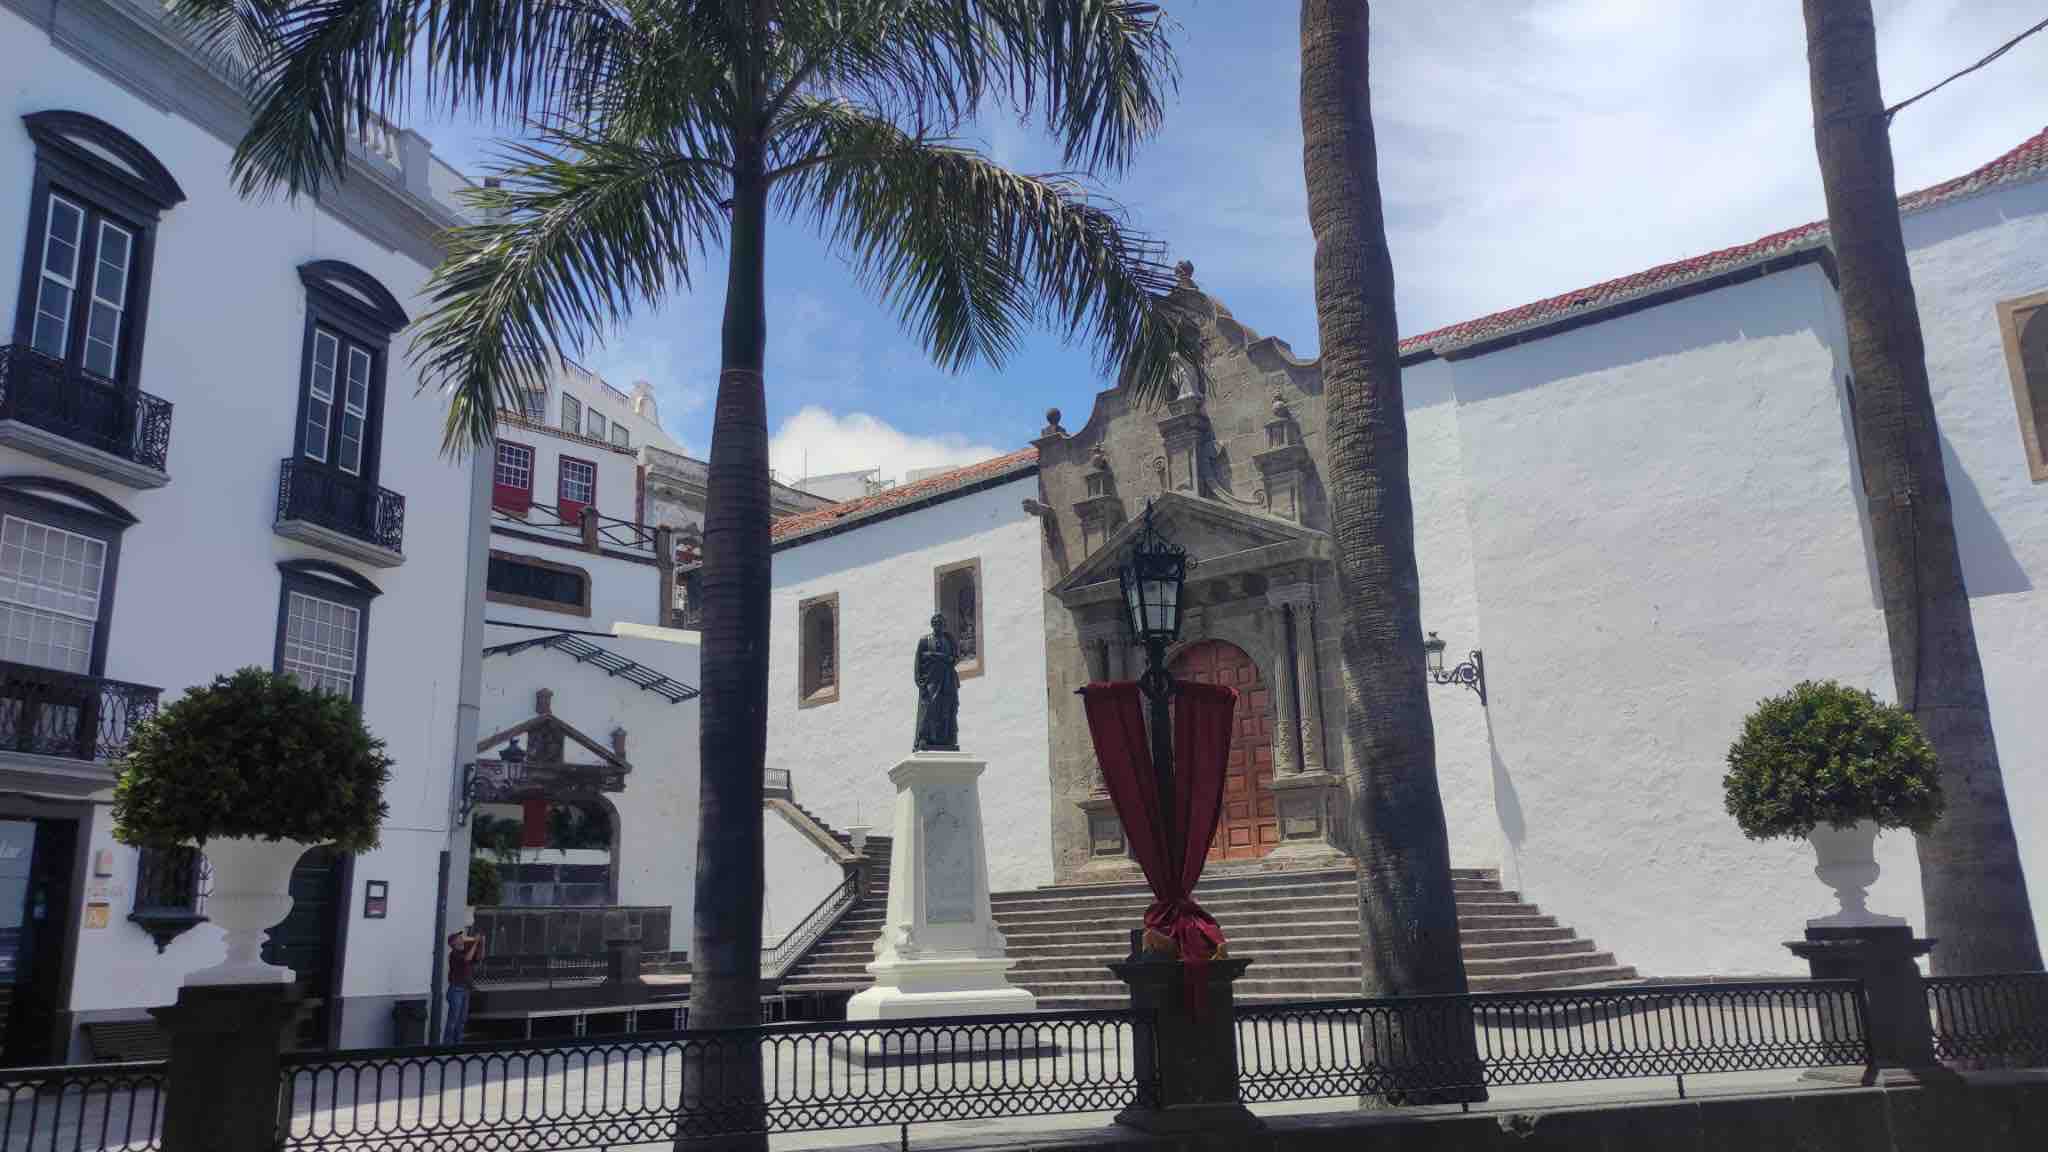 La Escuela de Arte Manolo Blahnik proyecta hoy jueves el video-mapping ‘Los regidores bienales’ en Santa Cruz de La Palma